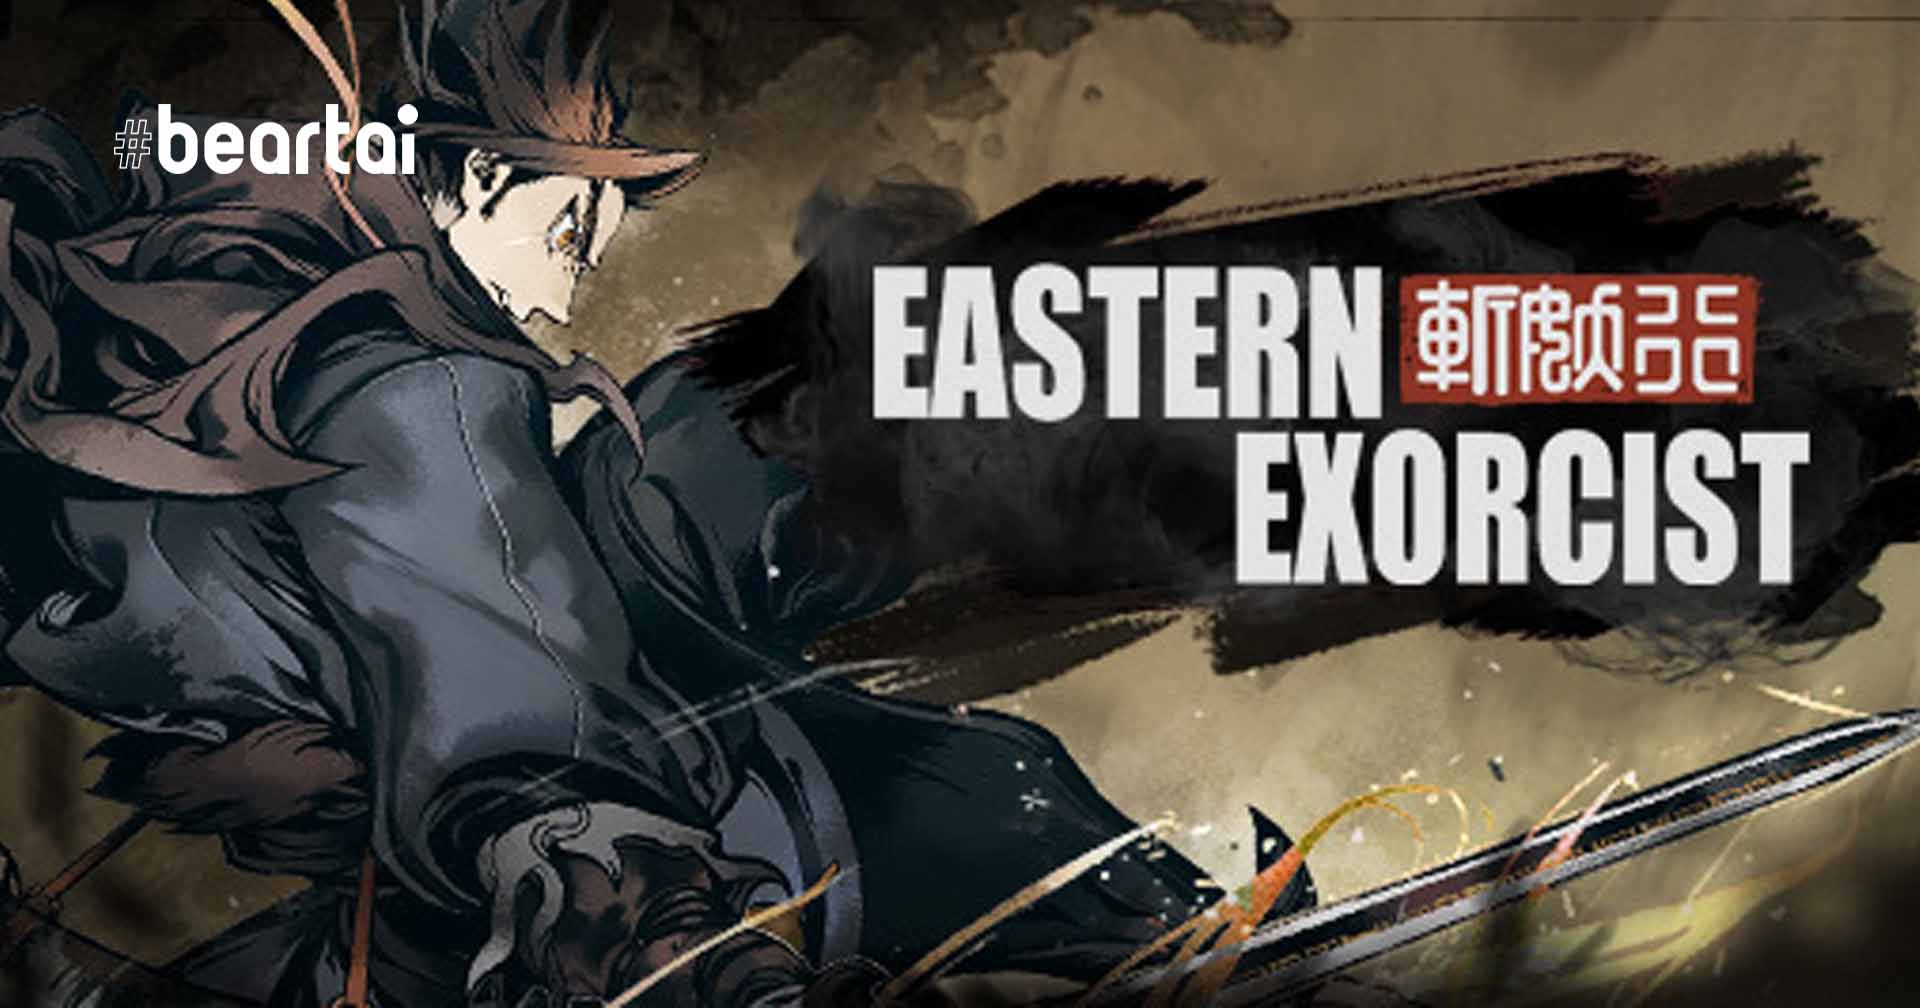 [รีวิวเกม] Eastern Exorcist เกมปราบปีศาจ ภาพเสียงสไตล์จีนสุดละเมียด